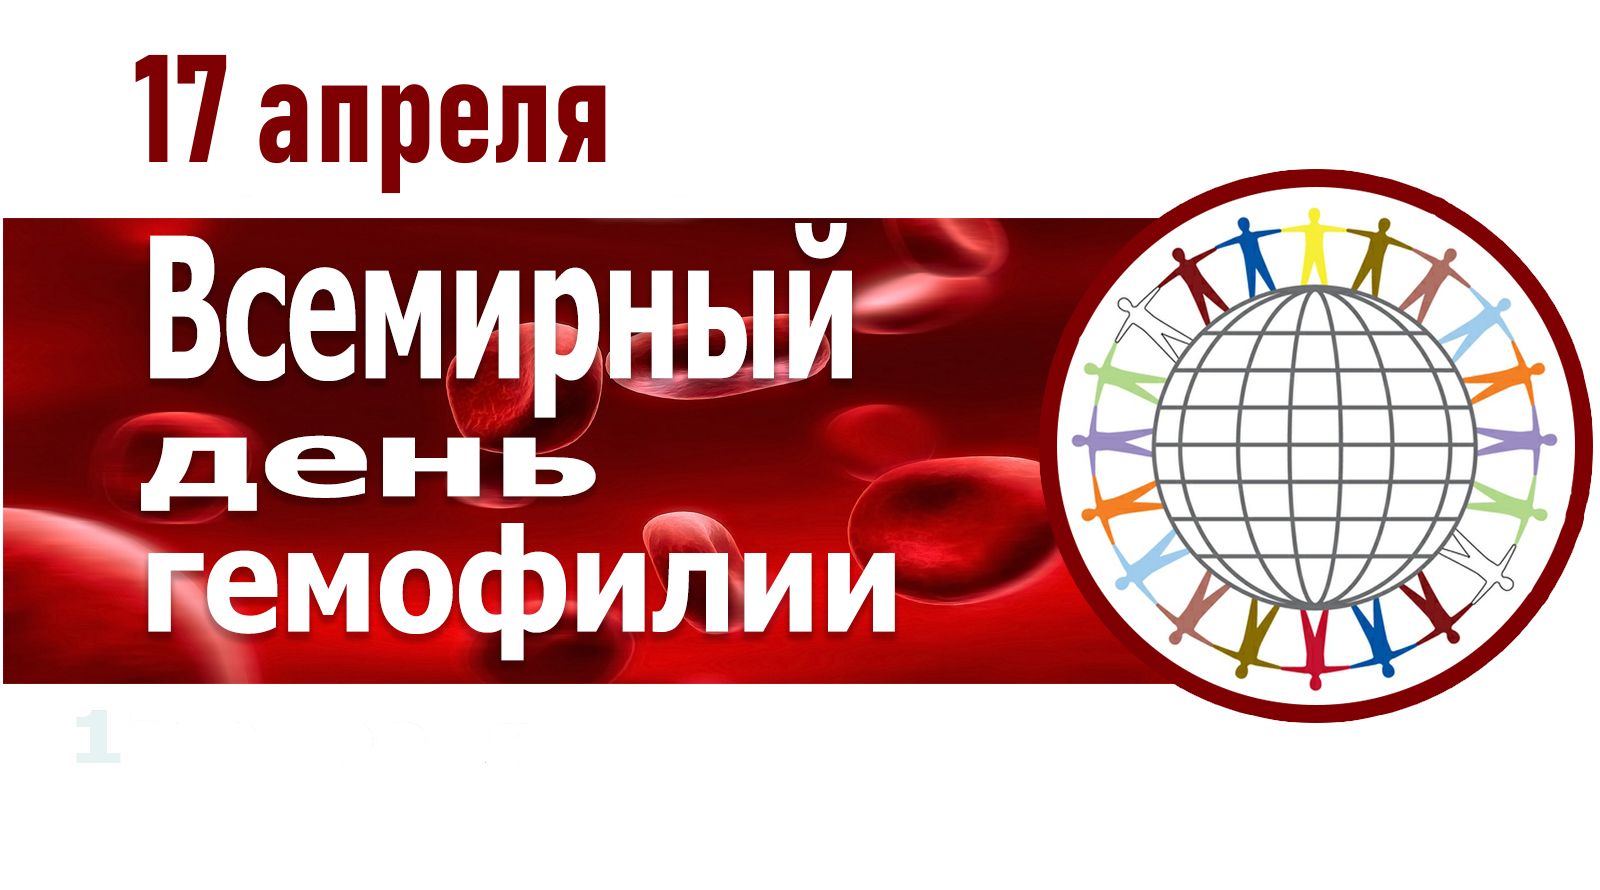 17 апреля всемирный день. Всемирный день гемофилии. Всемирный день гемофилии 2021. 17 Апреля день гемофилии. День борьбы с гемофилией.